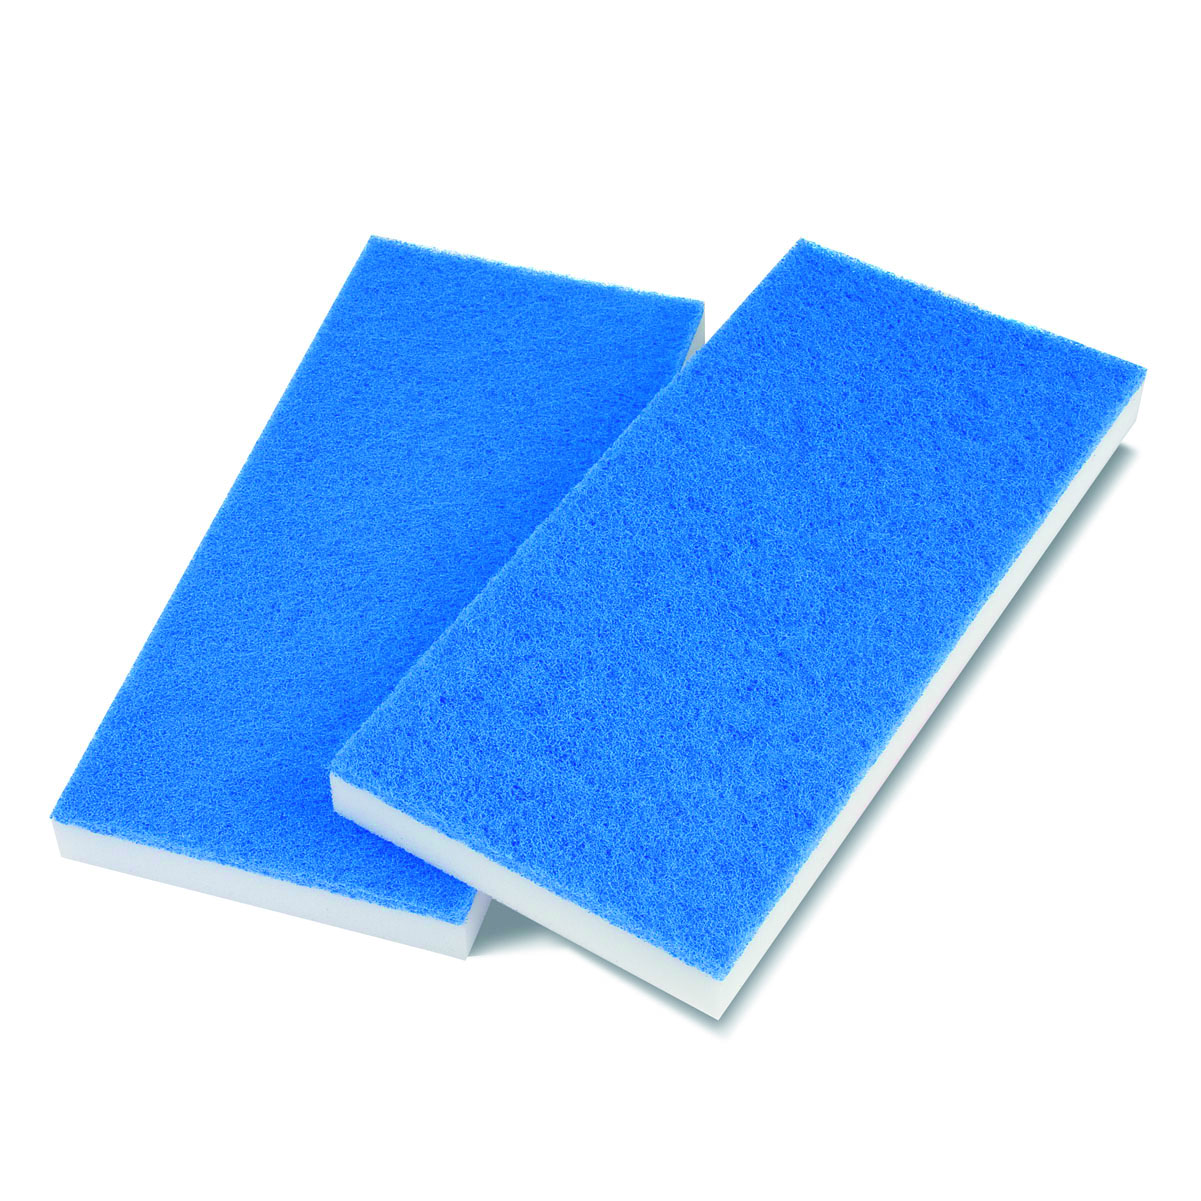 Superhandpad Melamin 250 x 115 x 24mm, weiß/blau, für Padhalter